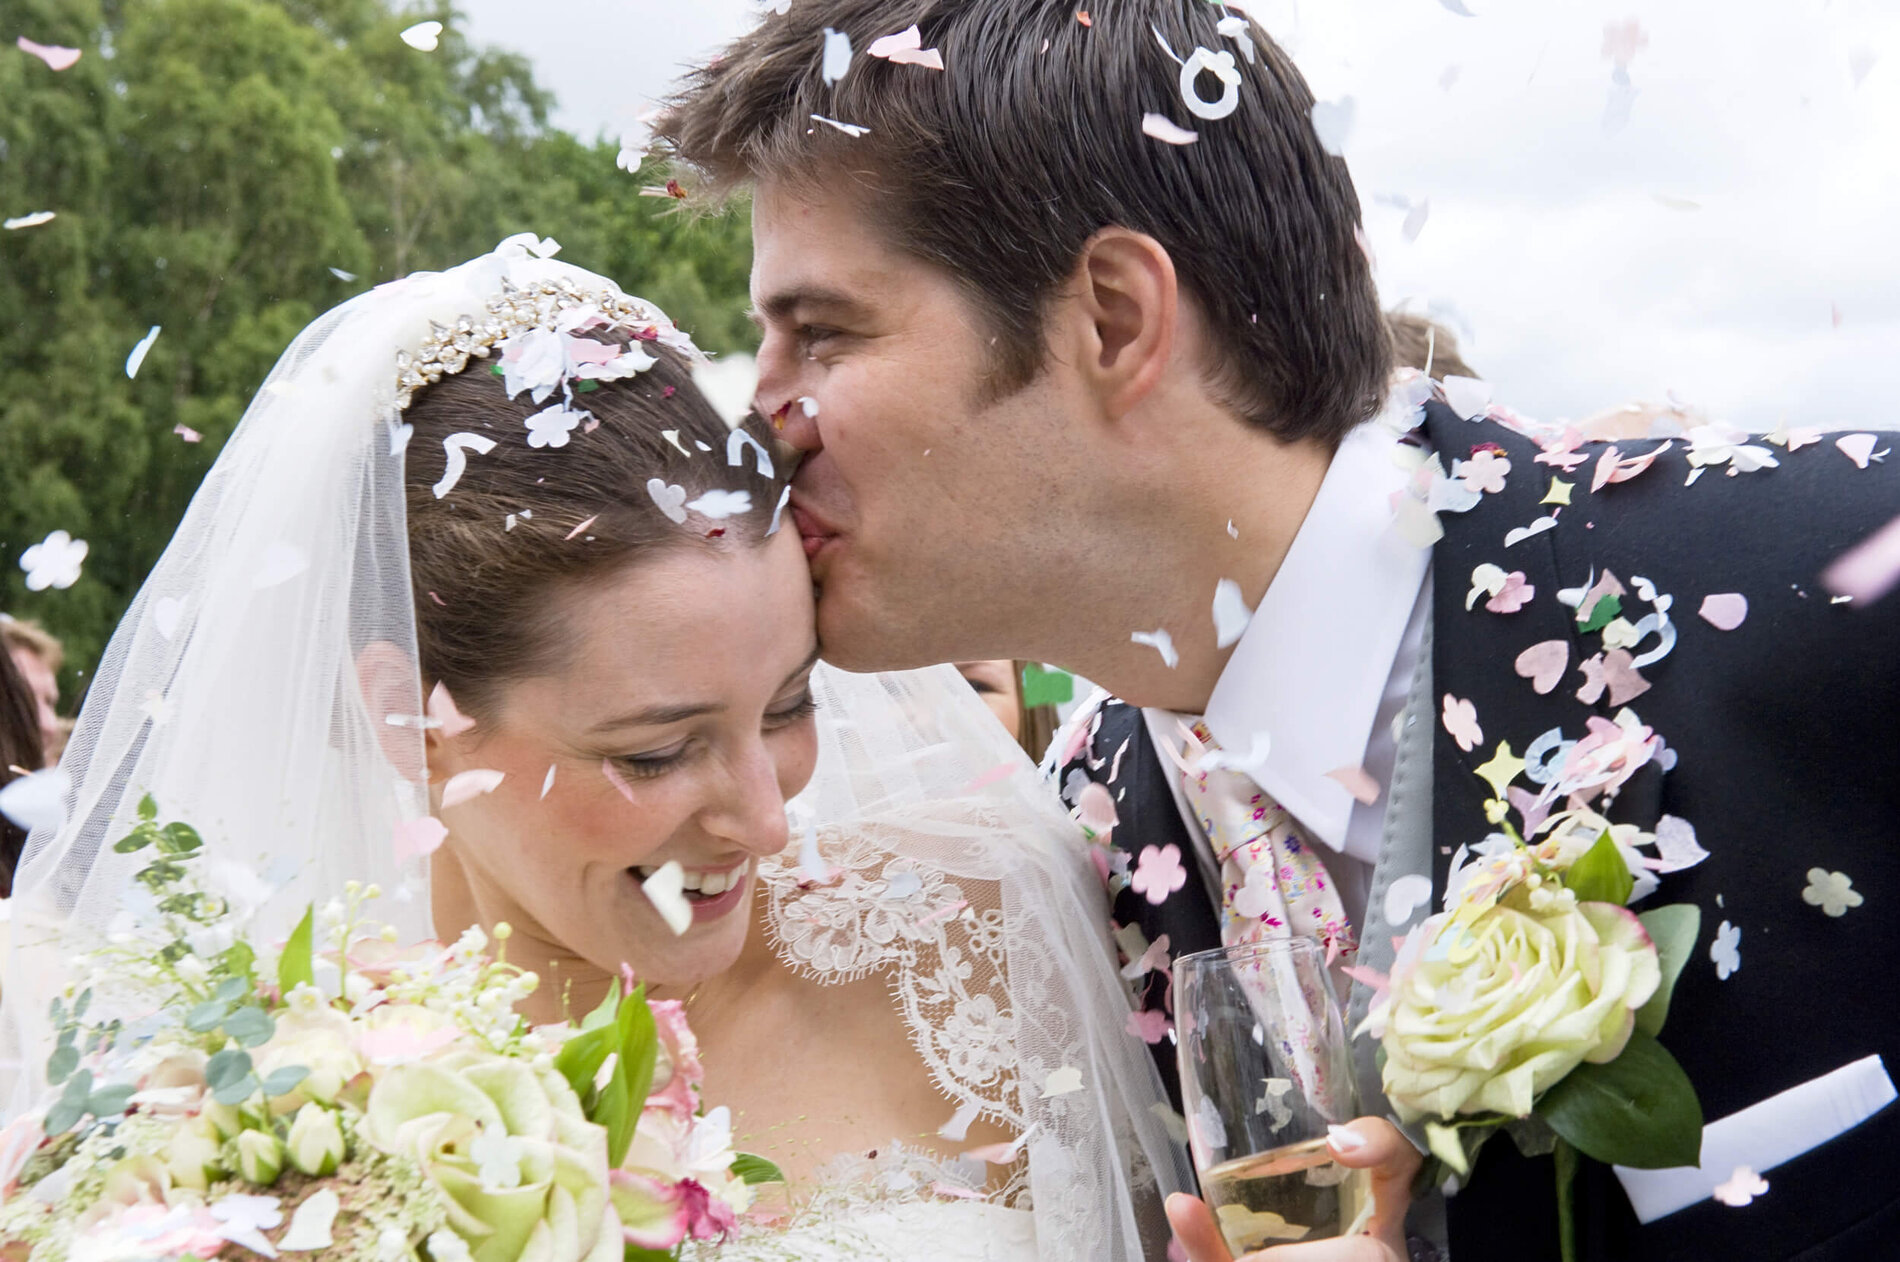 Der Bräutigam küsst die Braut auf ihre Stirn